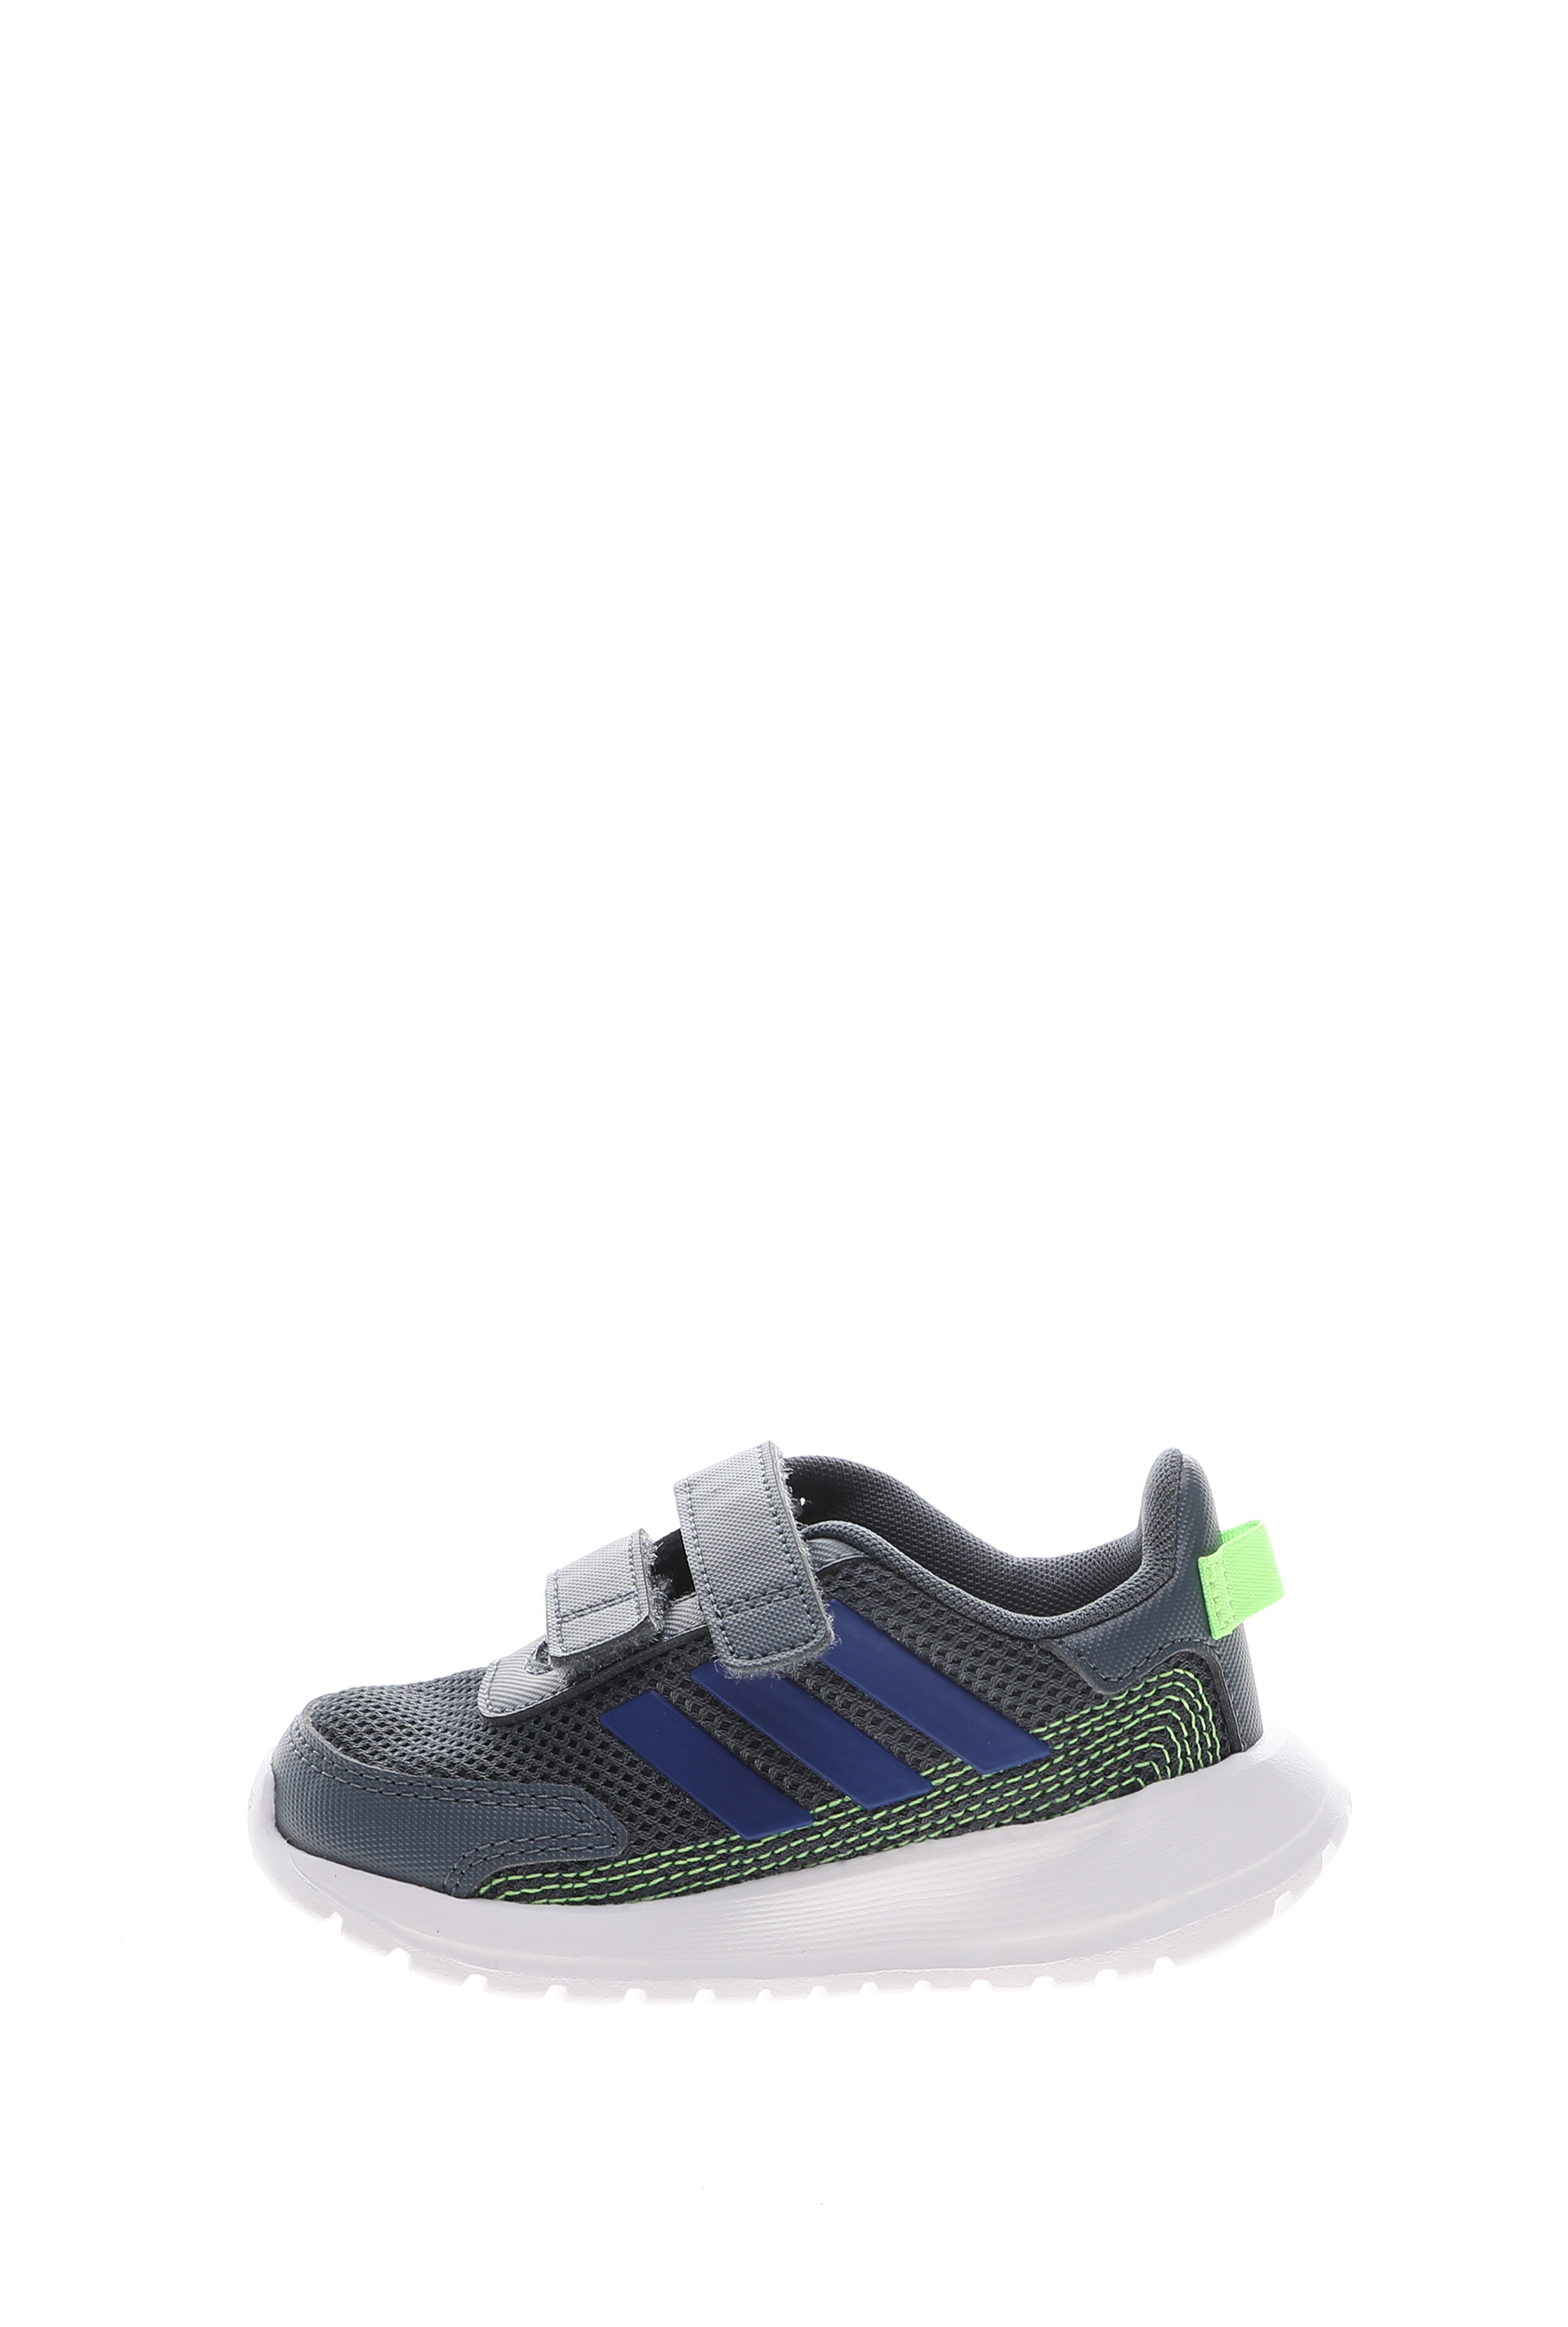 Παιδικά/Baby/Παπούτσια ADIDAS - Βρεφικά αθλητικά παπούτσια adidas TENSOR I γκρί